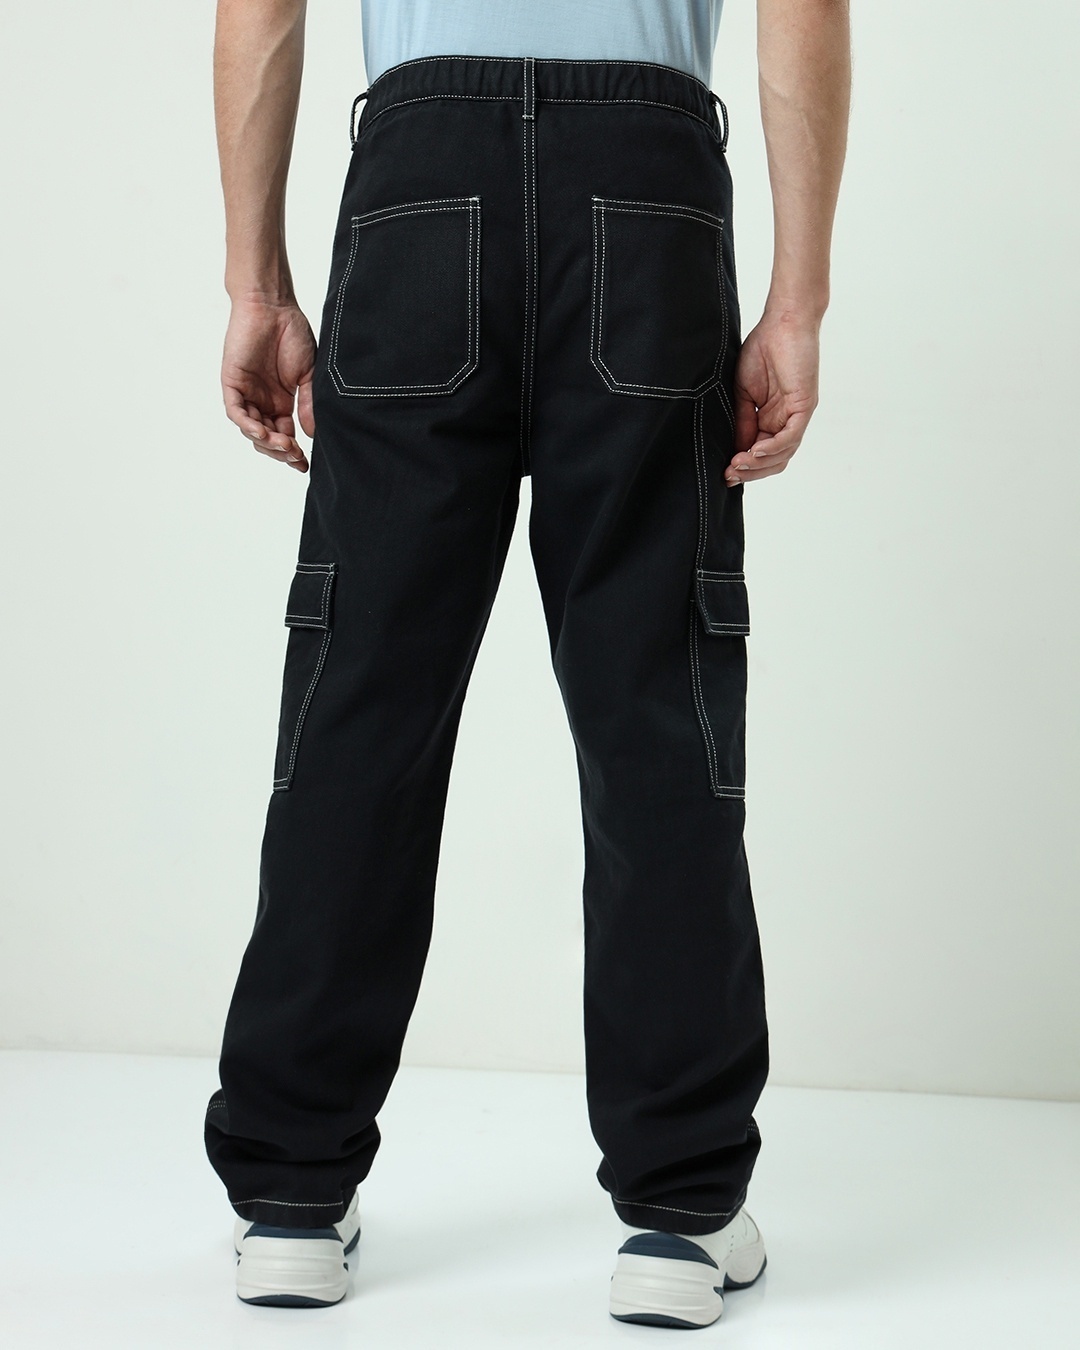 Buy Men's Black Baggy Cargo Jeans Online at Bewakoof